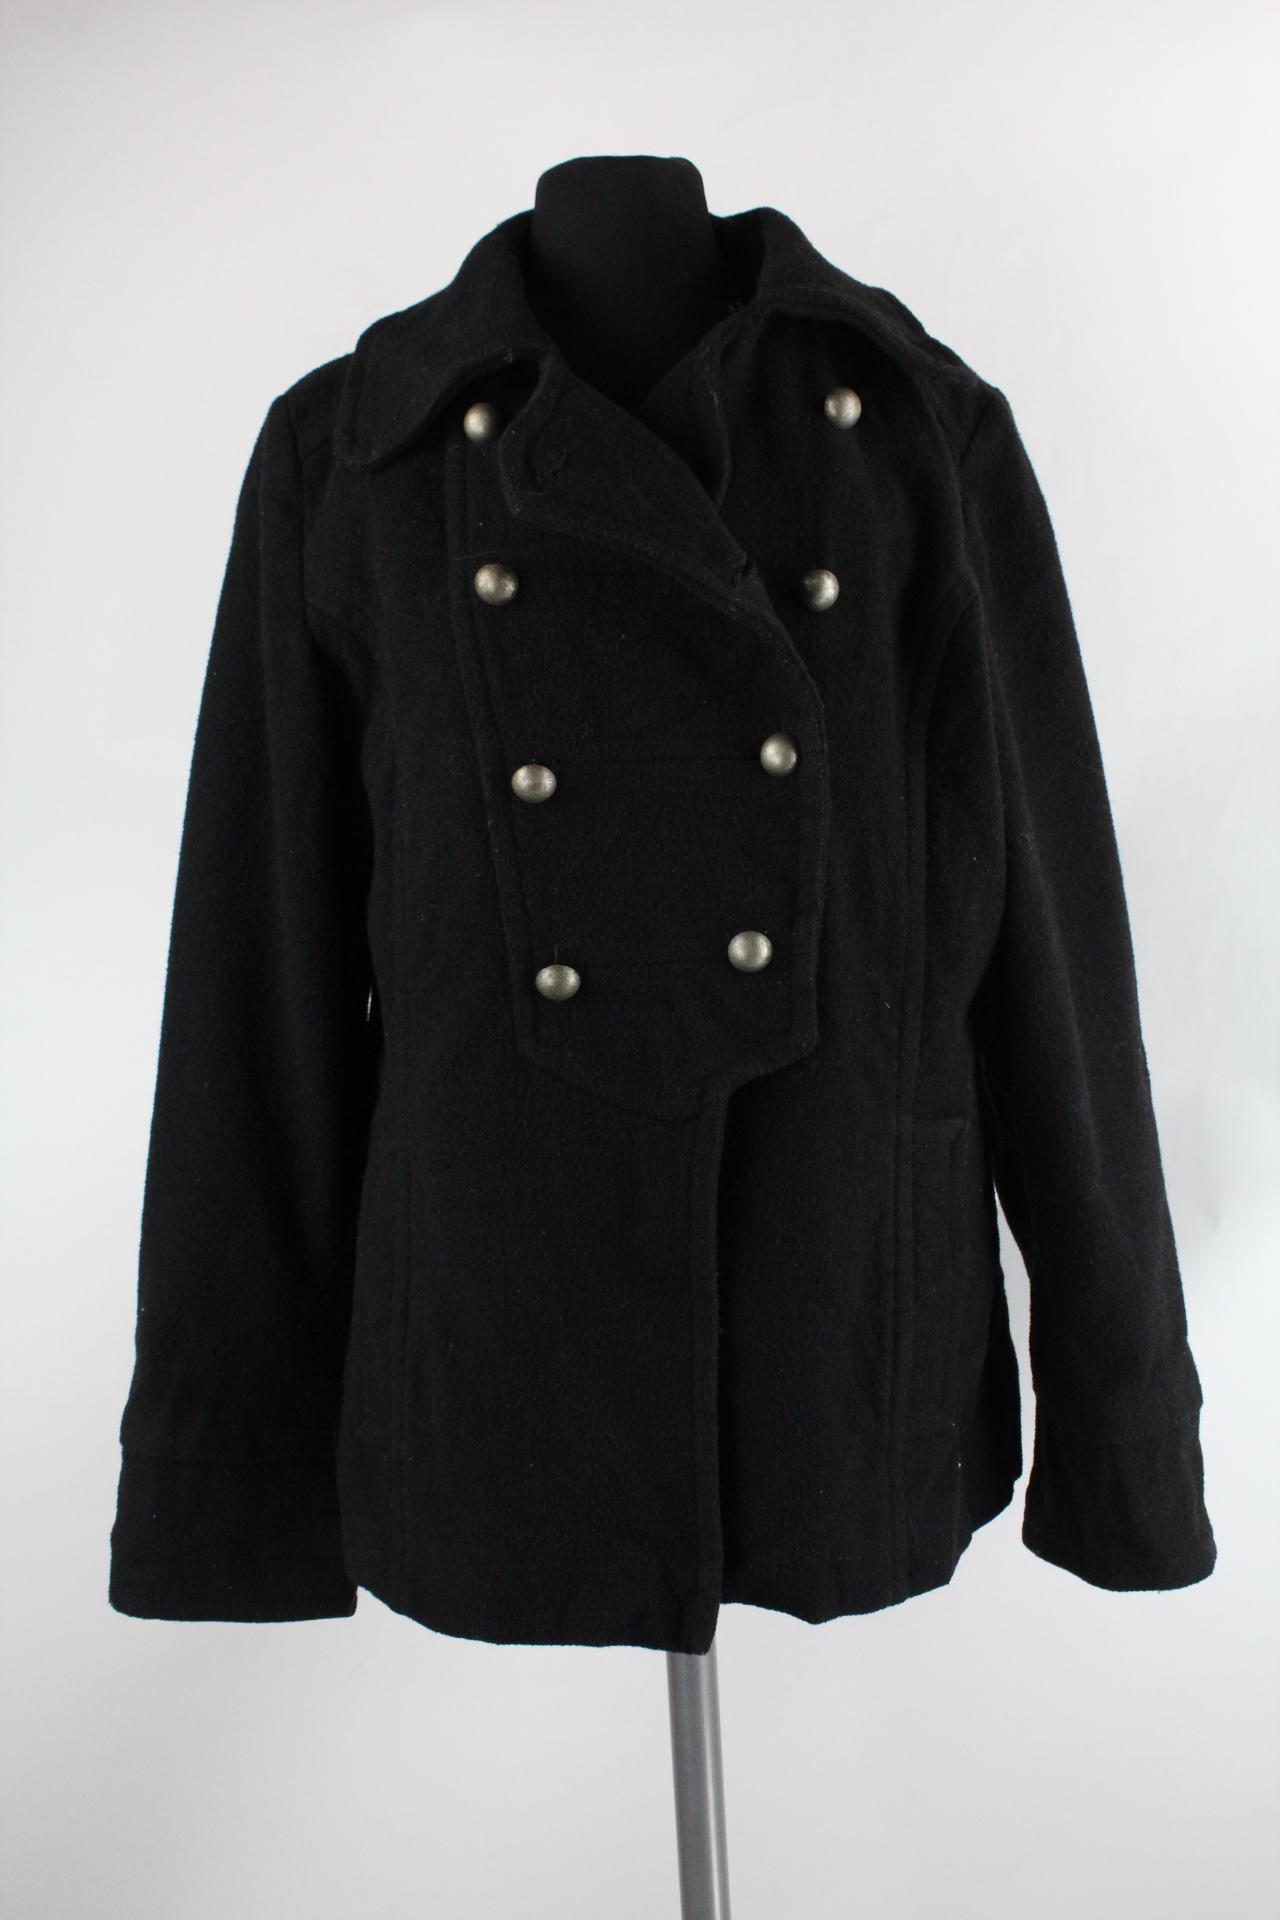 Pimkie Damen-Mantel schwarz Größe 42